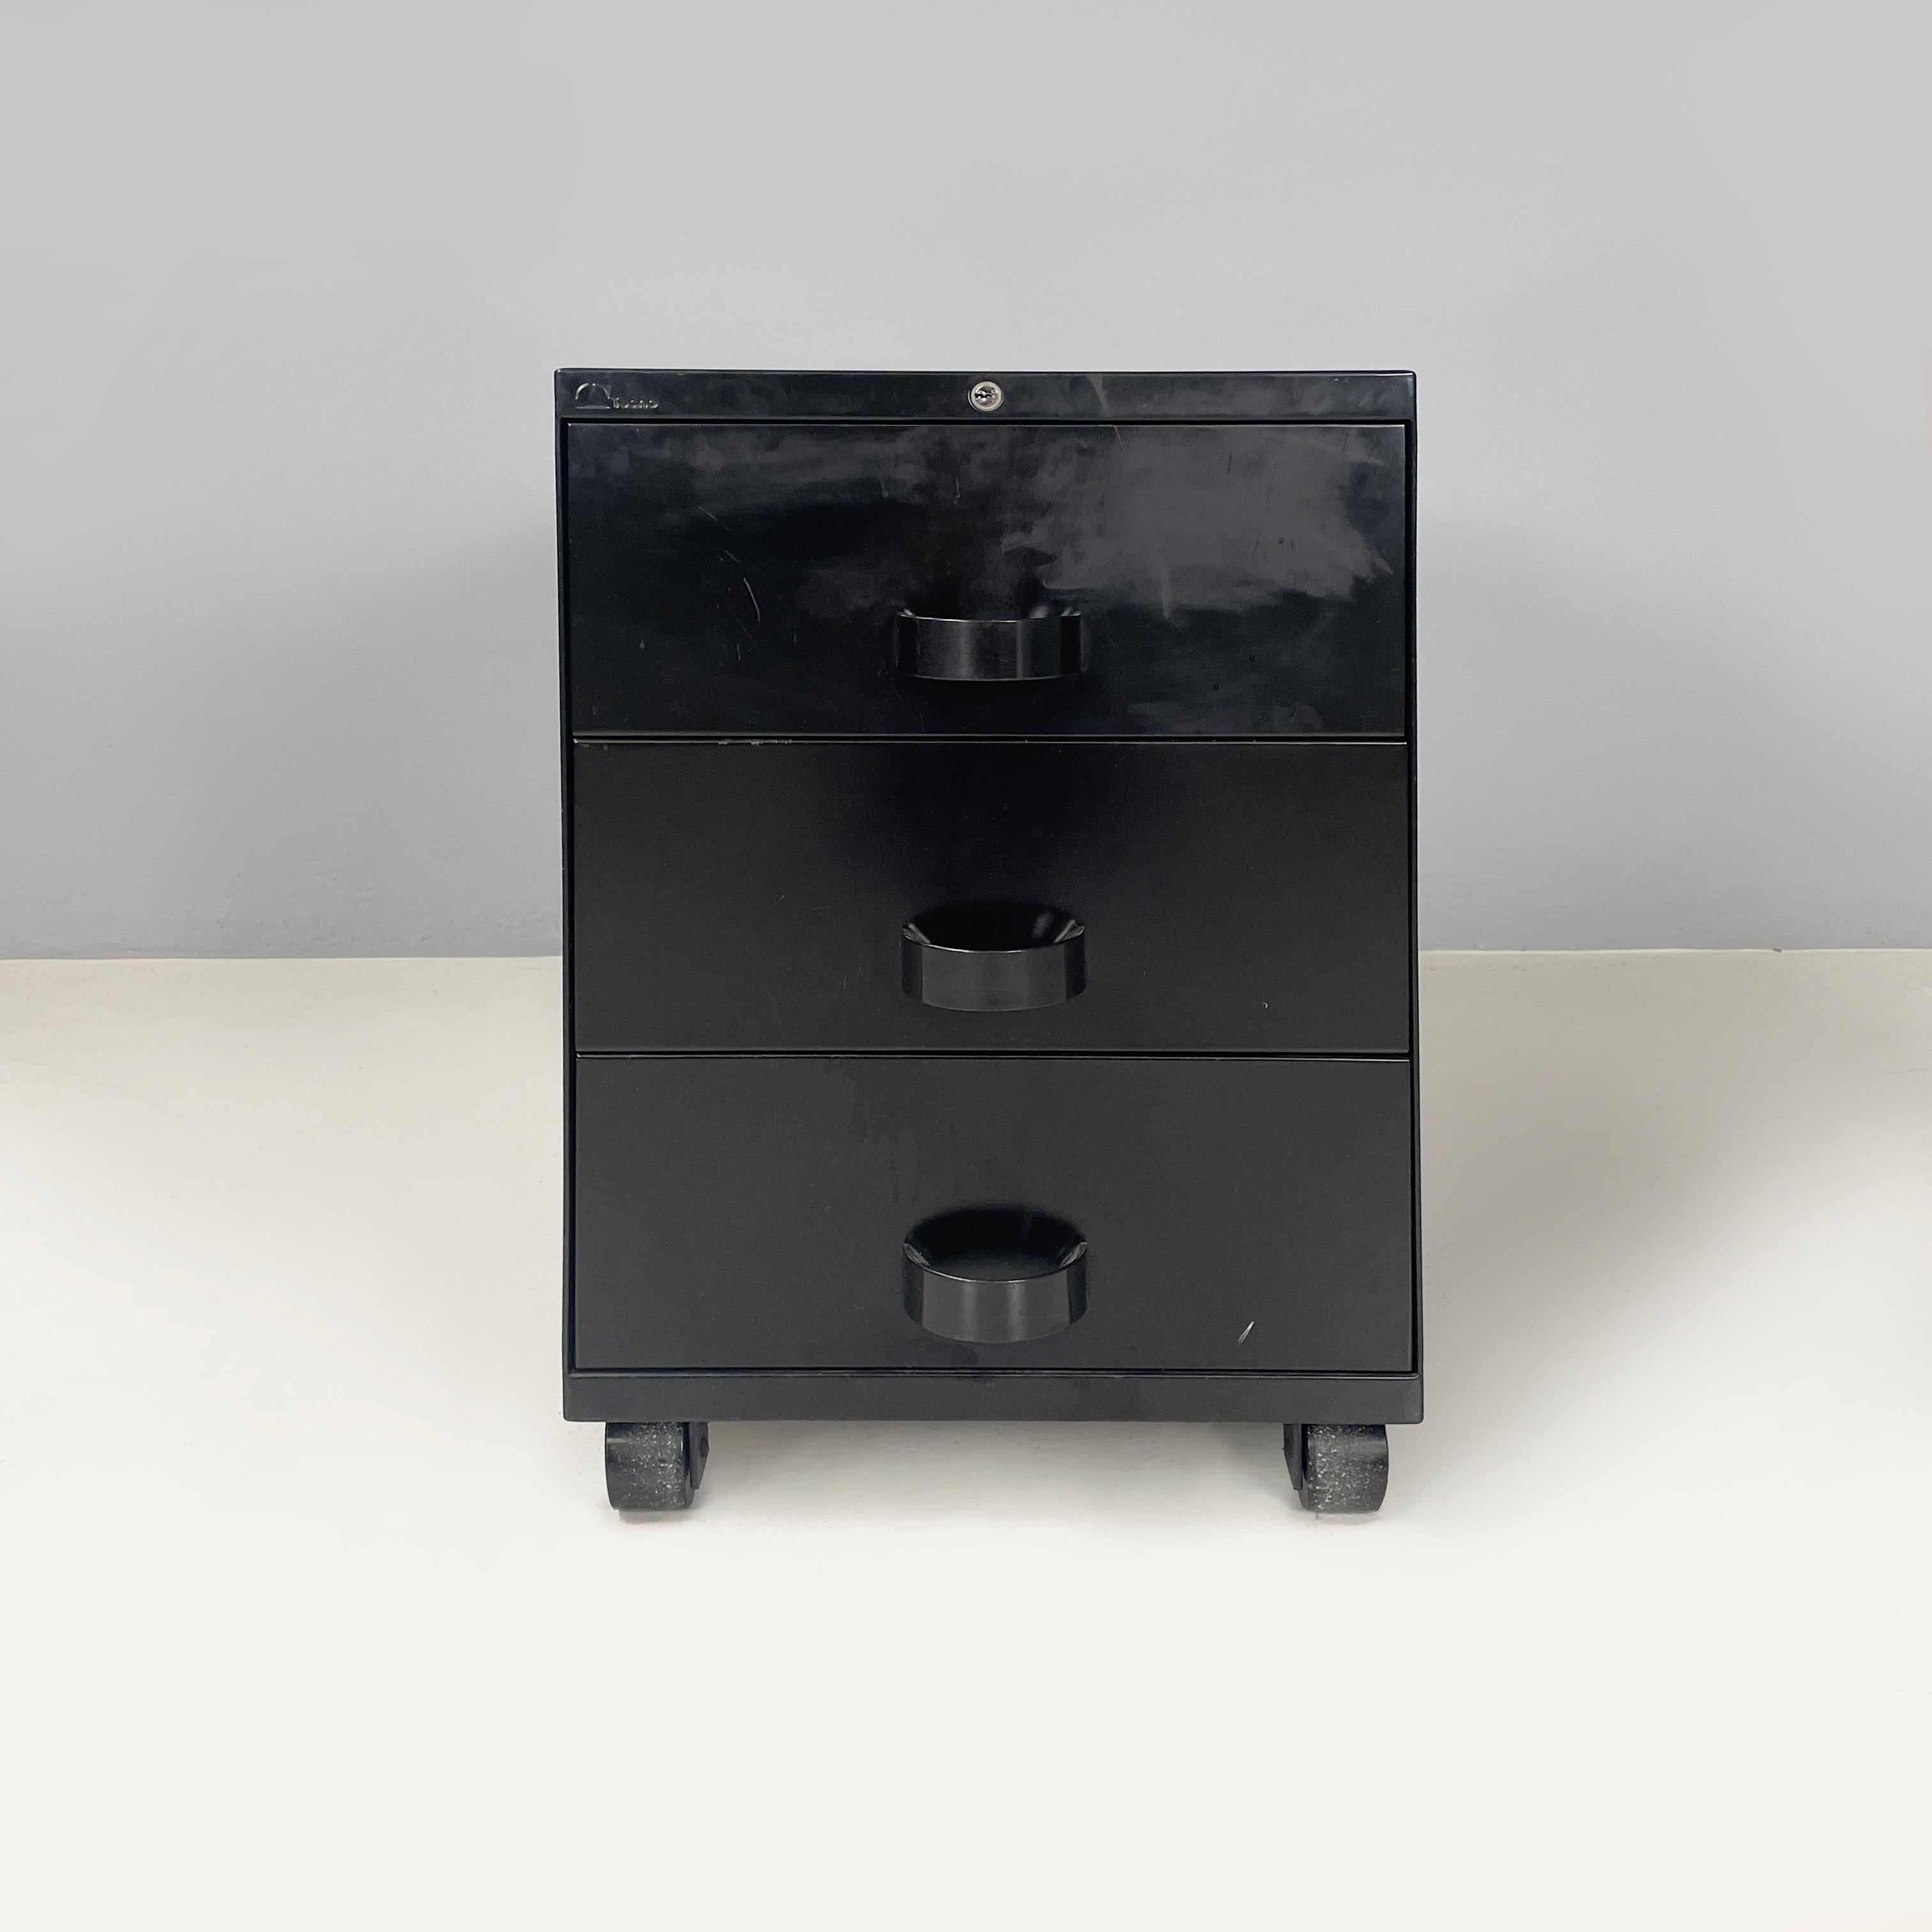 Schwarzer Büro-Schubladenschrank von Osvaldo Borsani und Eugenio Gerli für Tecno, Italien, Mitte des Jahrhunderts, 1970er Jahre
Büro-Schubladenschrank mit rechteckigem Sockel aus schwarz lackiertem Metall. Auf der Vorderseite befinden sich 3 große